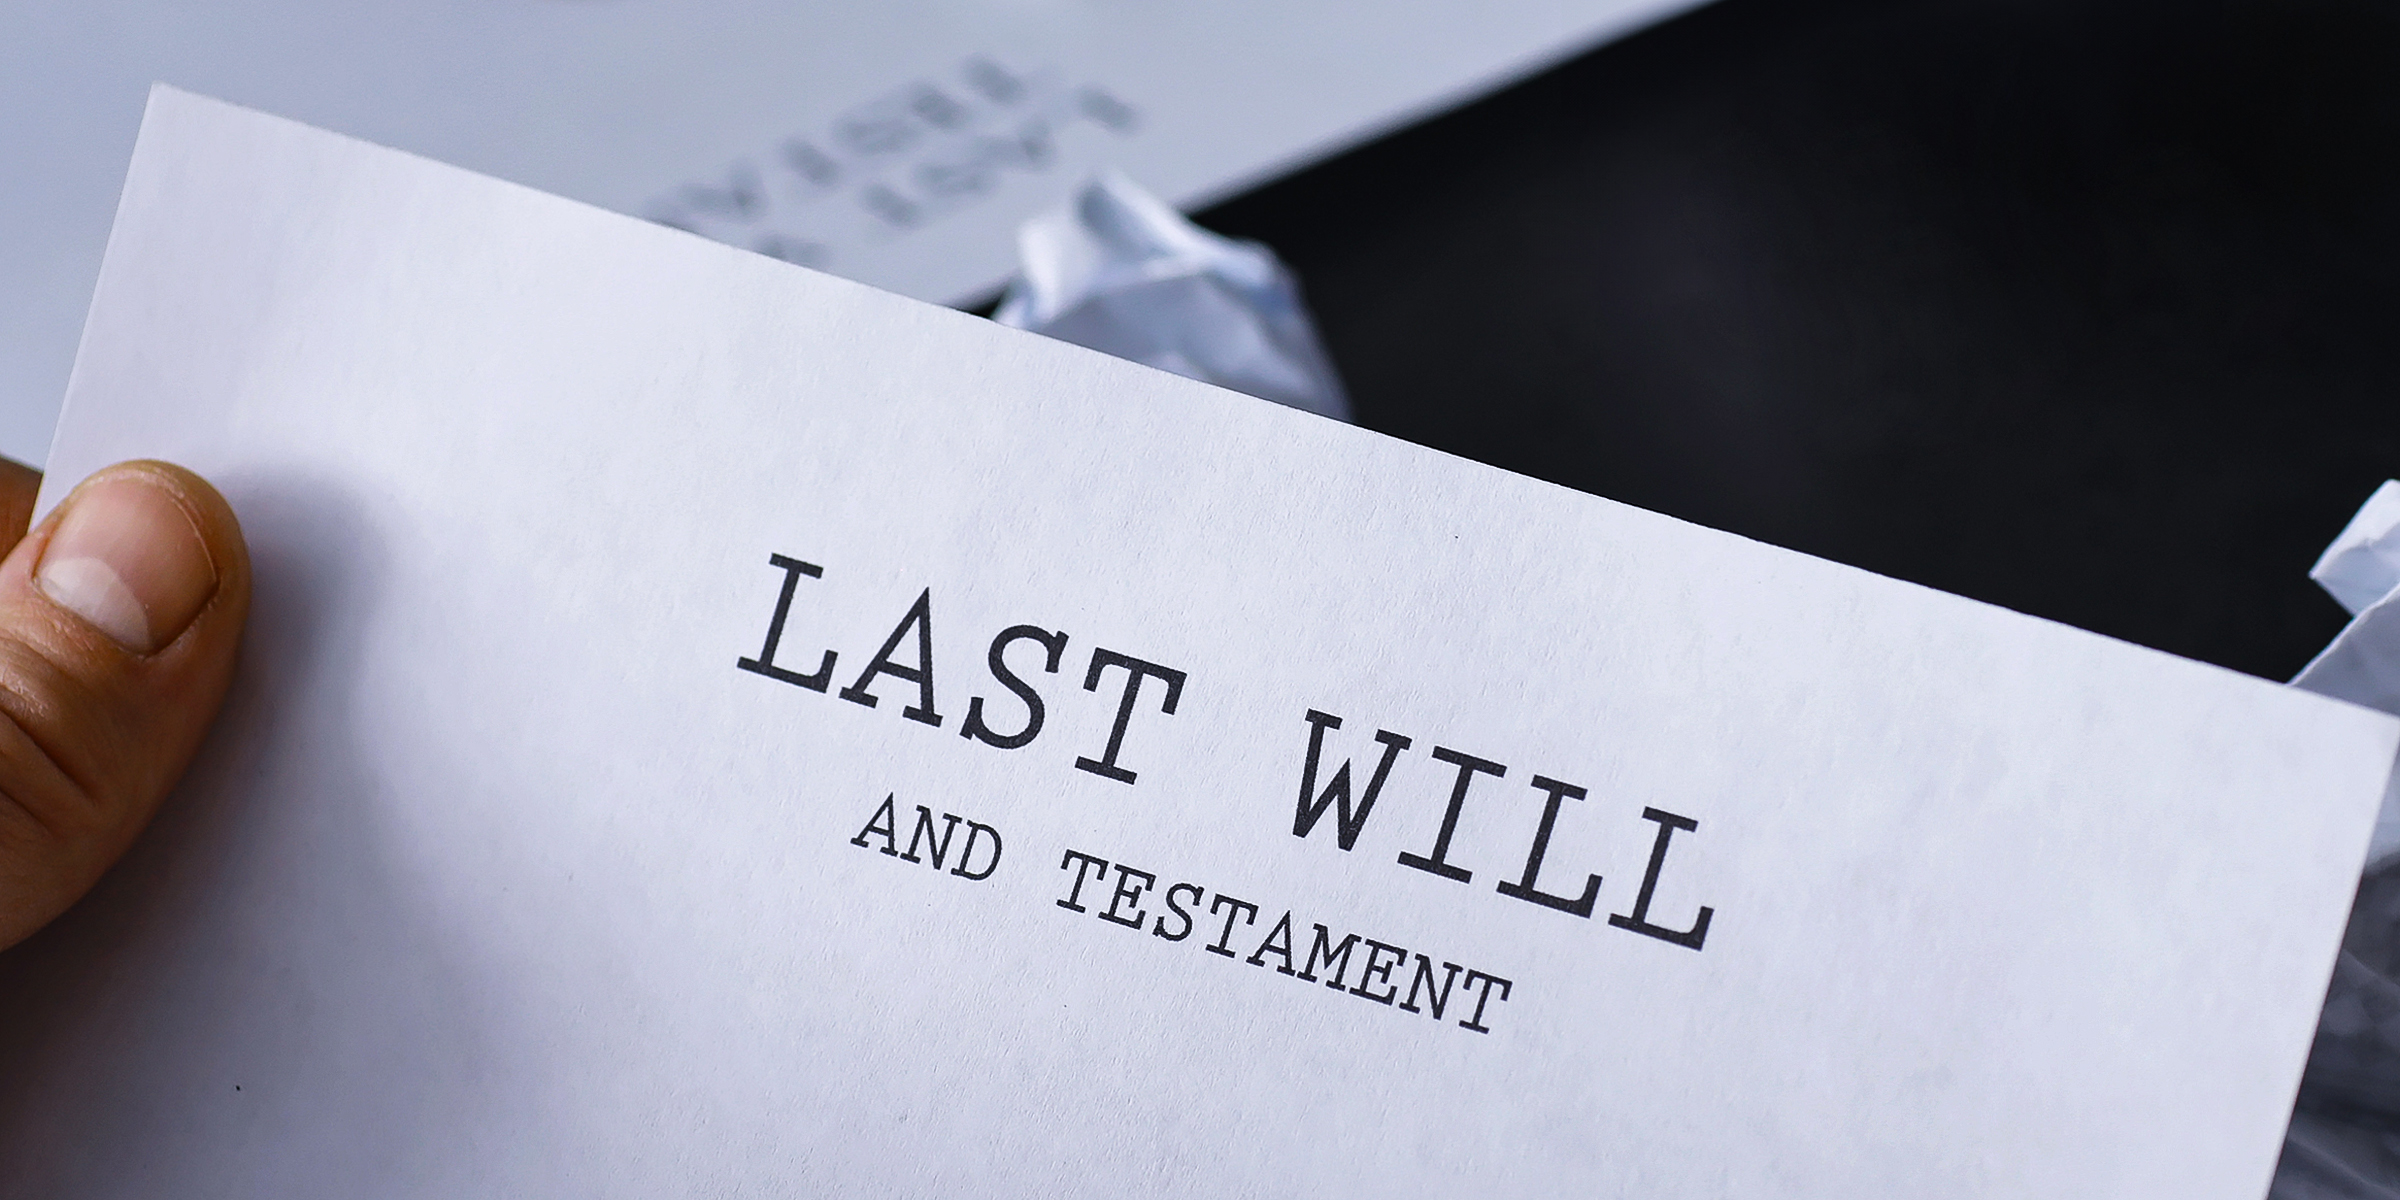 Una página impresa con el título "Última voluntad y testamento" | Fuente: Shutterstock